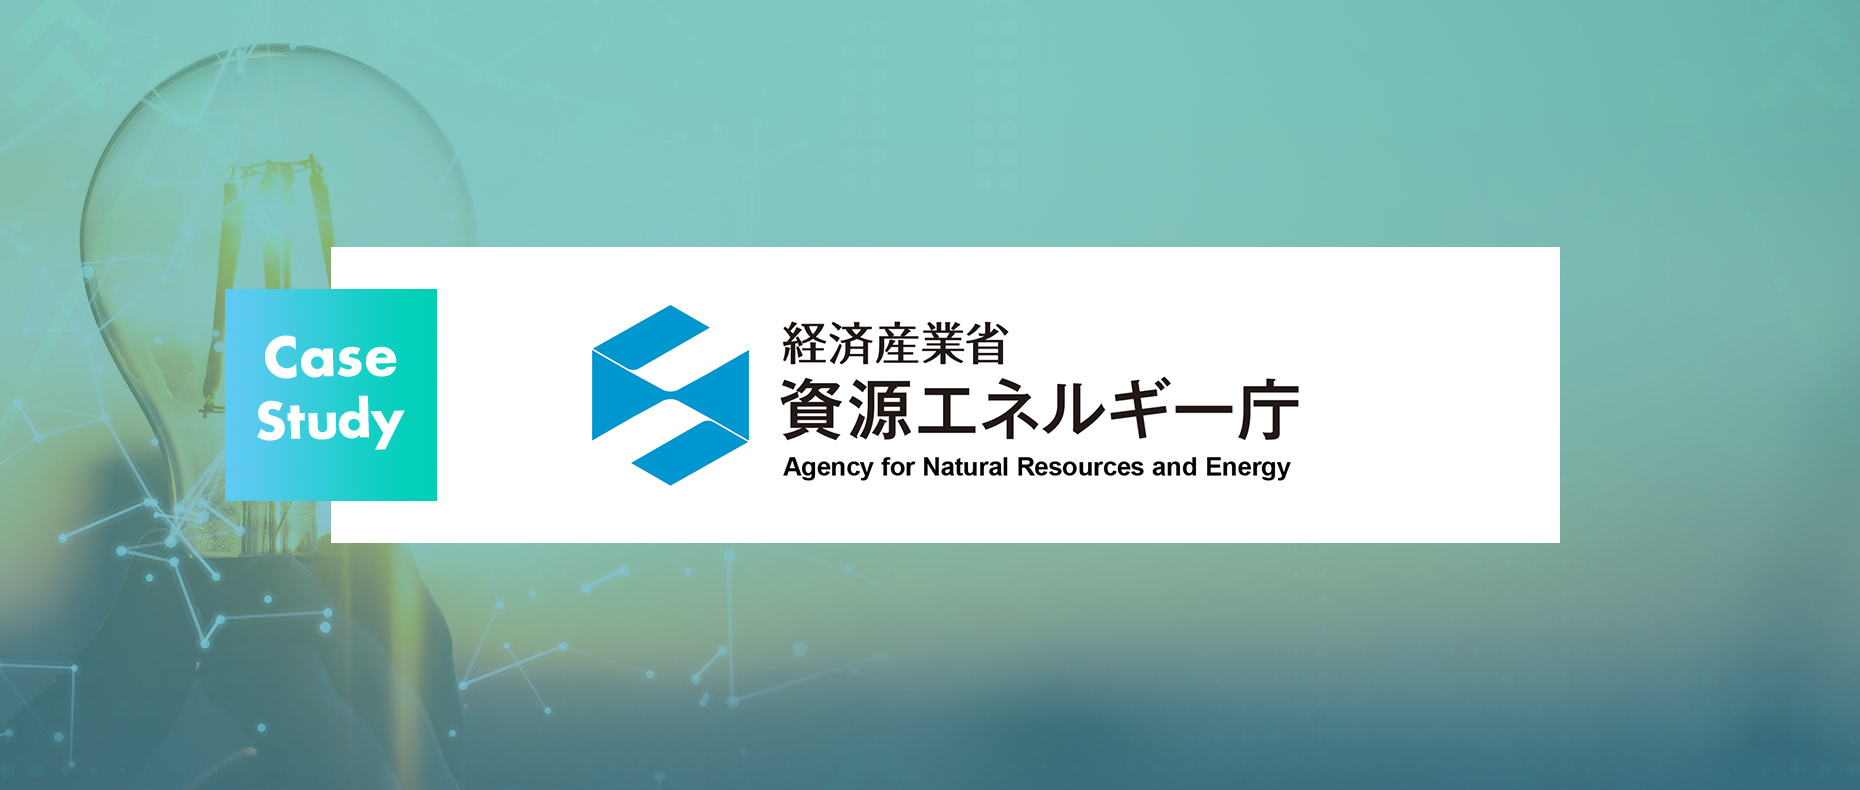 経済産業省 資源エネルギー庁